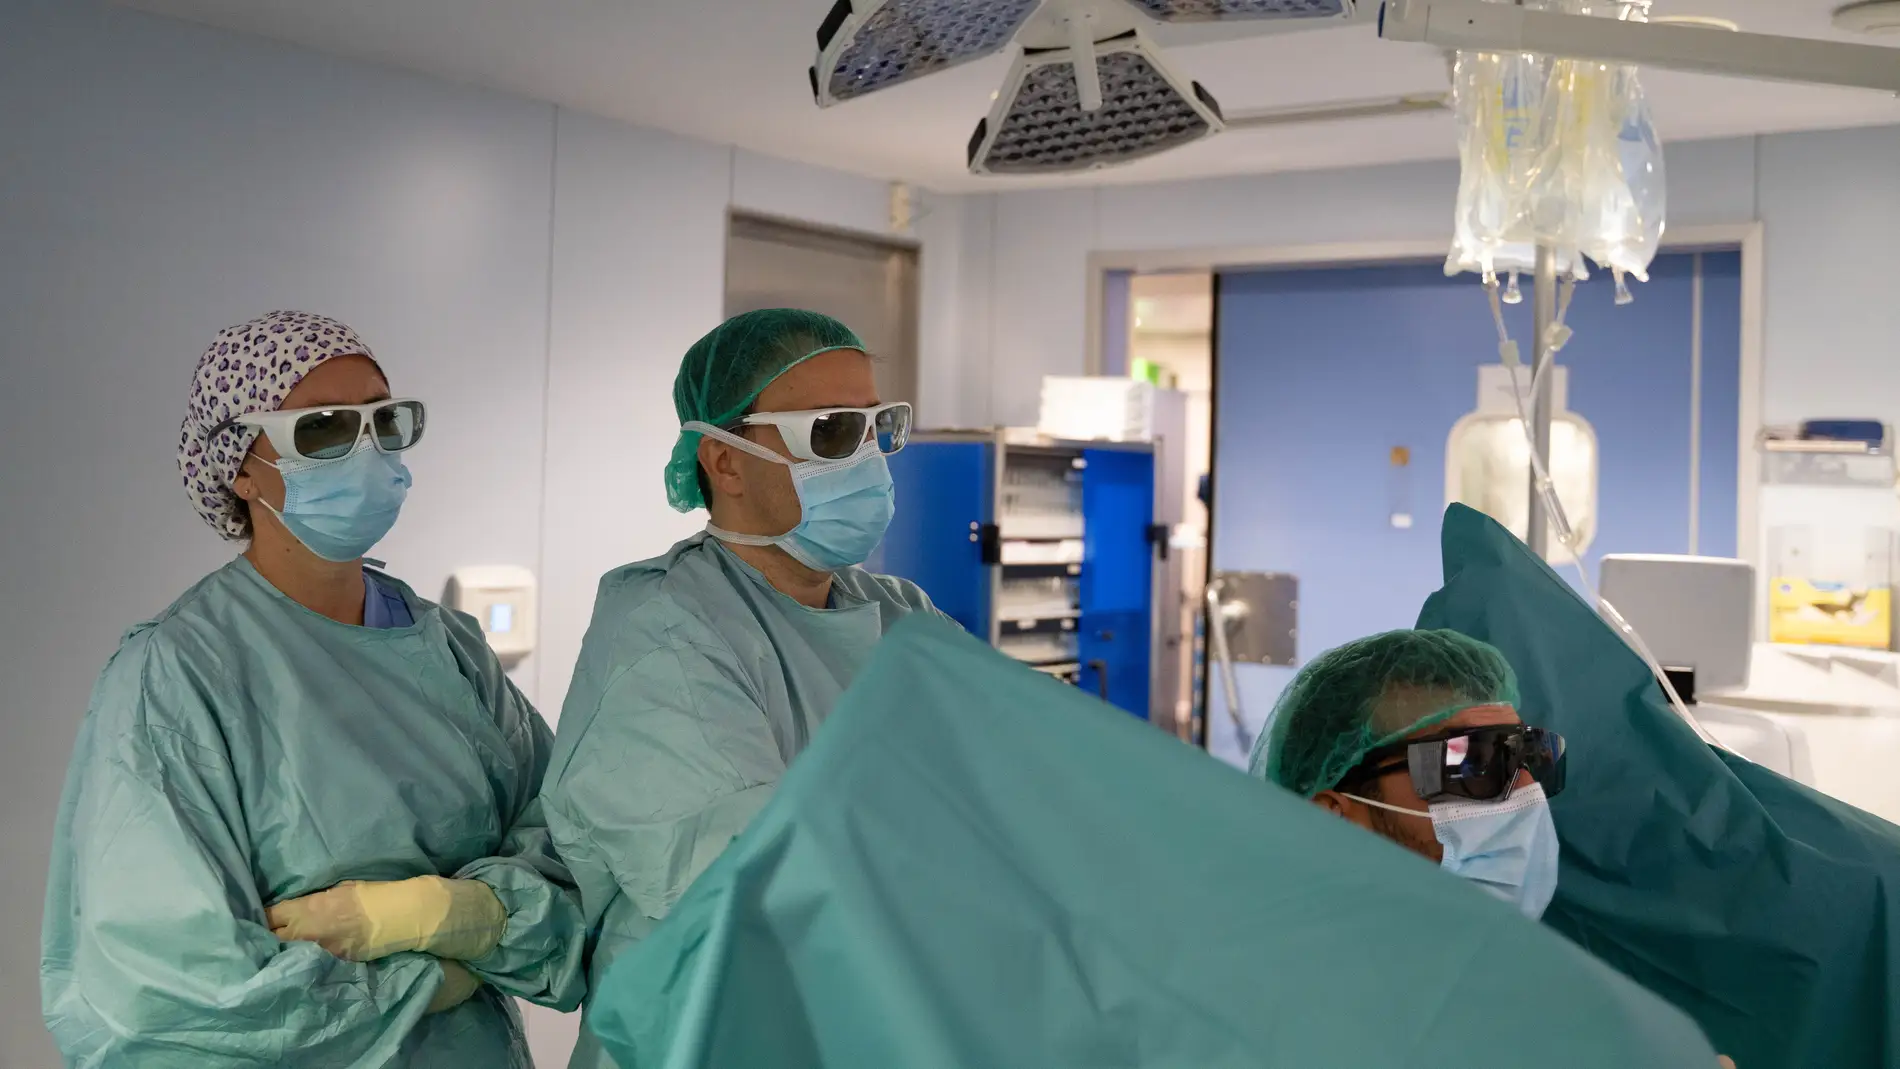 Grupo Policlínica dispone de un láser de alta potencia destinado al tratamiento de la hiperplasia benigna de próstata y de la litiasis